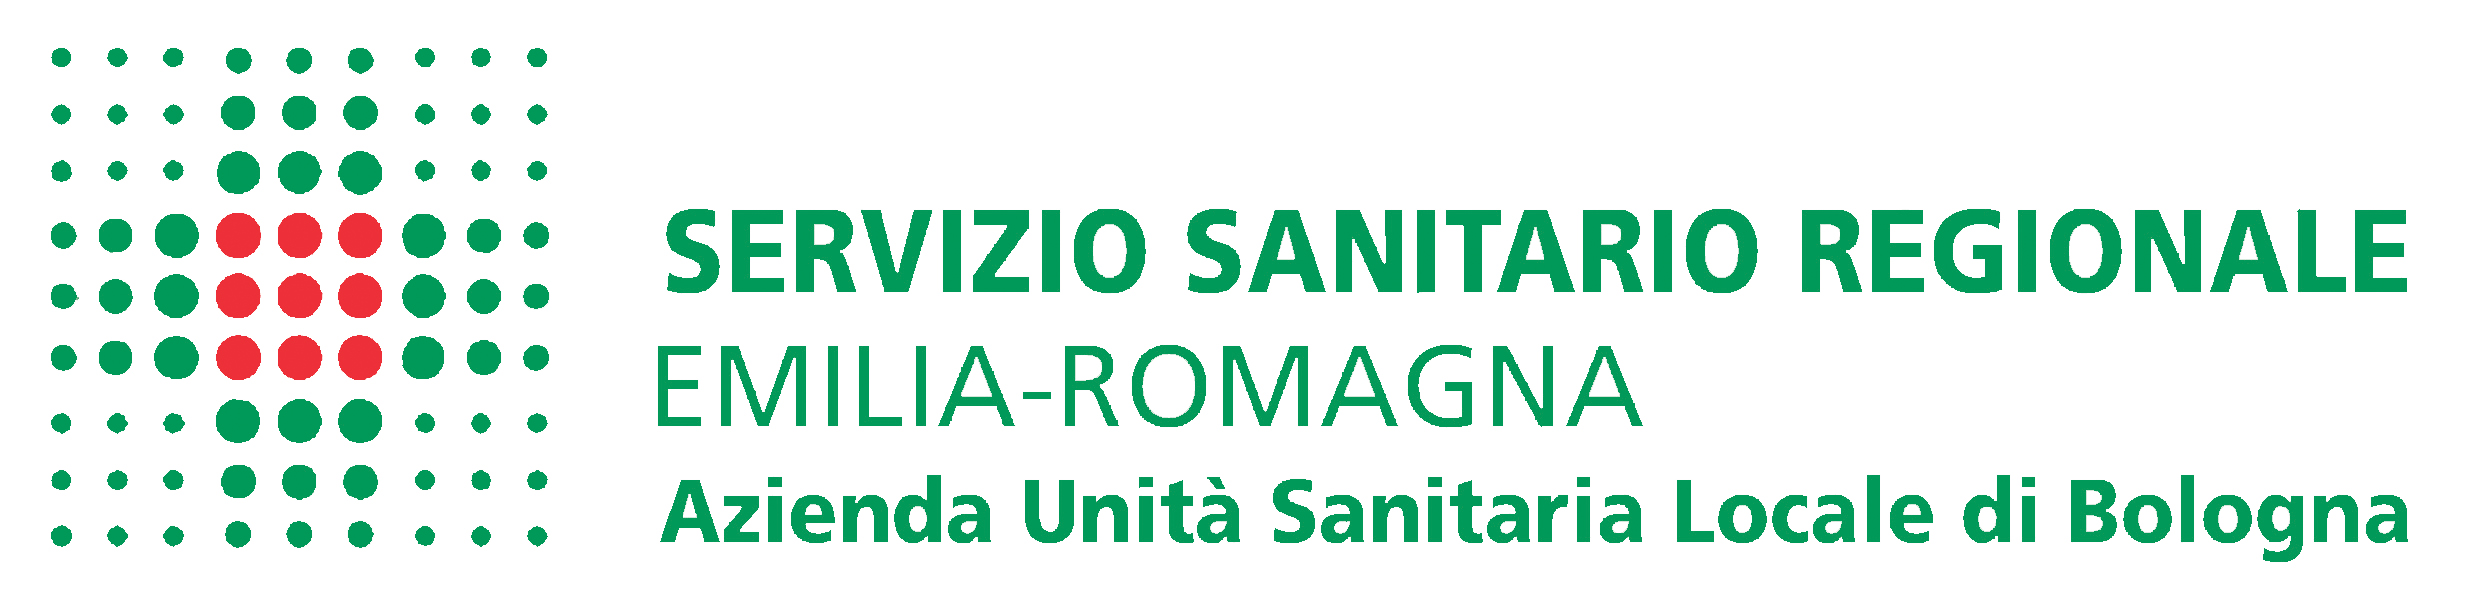 In collaborazione con AIC Emilia-Romagna CORSO DI FORMAZIONE PER OPERATORI ADDETTI ALLA RISTORAZIONE ai sensi della Legge L. 4 luglio 25, n.